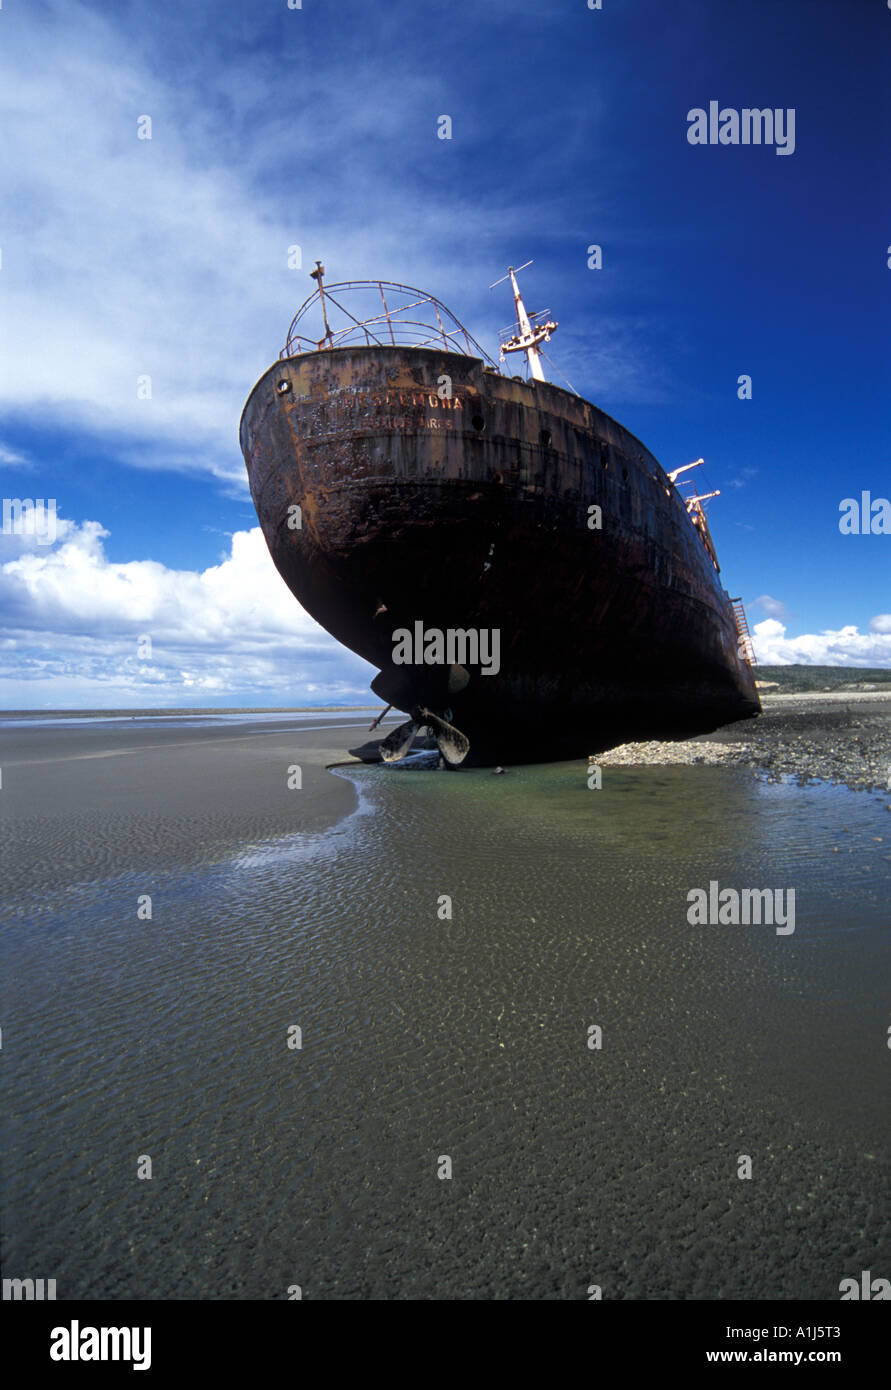 Desdemona Cargo Shipwreck in Cabo San Pablo, Tierra del Fuego, Argentina Stock Photo